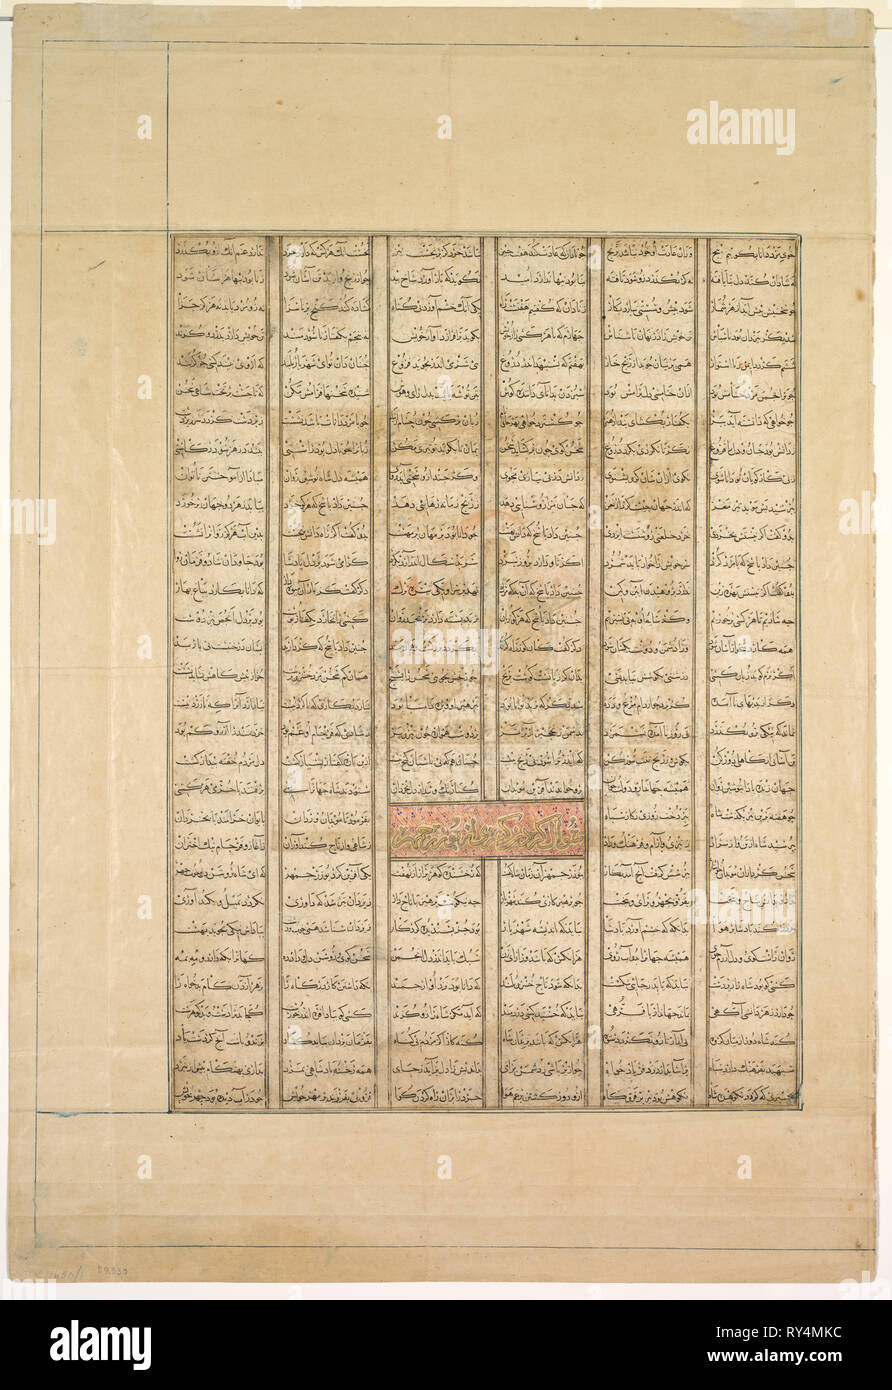 La page de texte, de versets (Recto) ; la 40e année de règne du Roi Nushirwan Kisra. L'histoire d'Buzrgmihr. 'Kisra Nushirwan questions Buzurghmihr' dans le manuscrit d'Shahnama de Firdawsi., 1330-1335. L'Iran, Tabriz, Période Ilkhanide (mongole), 14e siècle. Encre et aquarelle sur papier opaque ; feuille : 59,3 x 40,2 cm (23 3/8 x 15 13/16 in.) ; zone de texte : 40,6 x 29,2 cm (16 x 11 1/2 po Banque D'Images